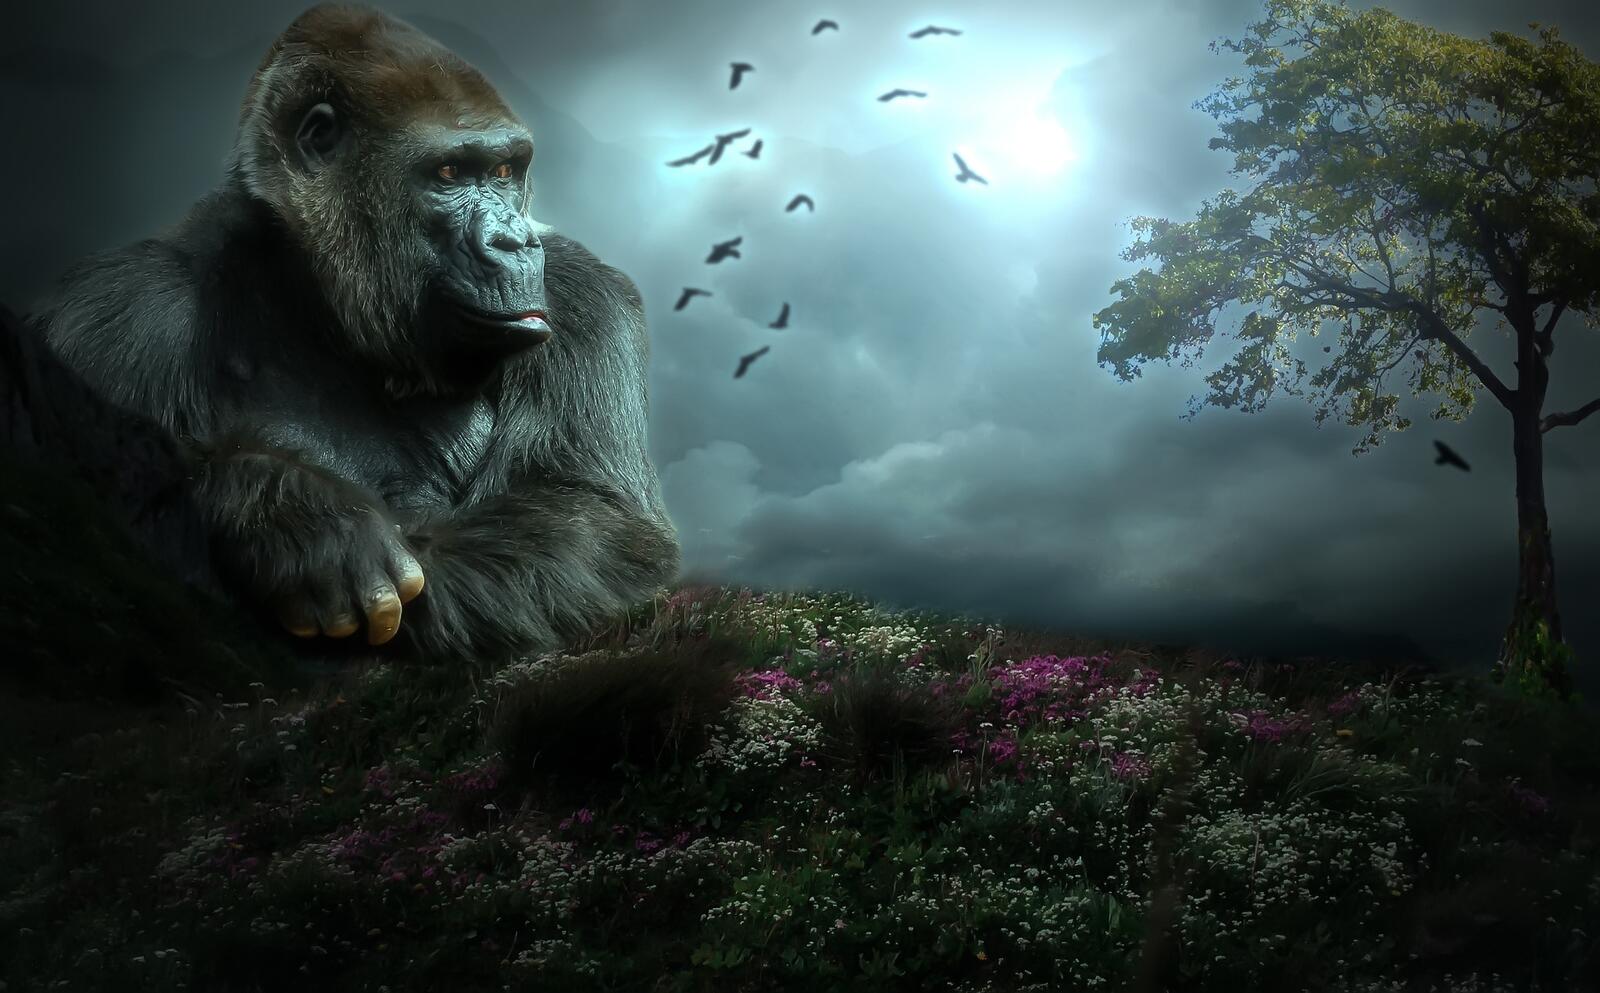 Wallpapers King Kong Gorilla giant APE-like monster on the desktop